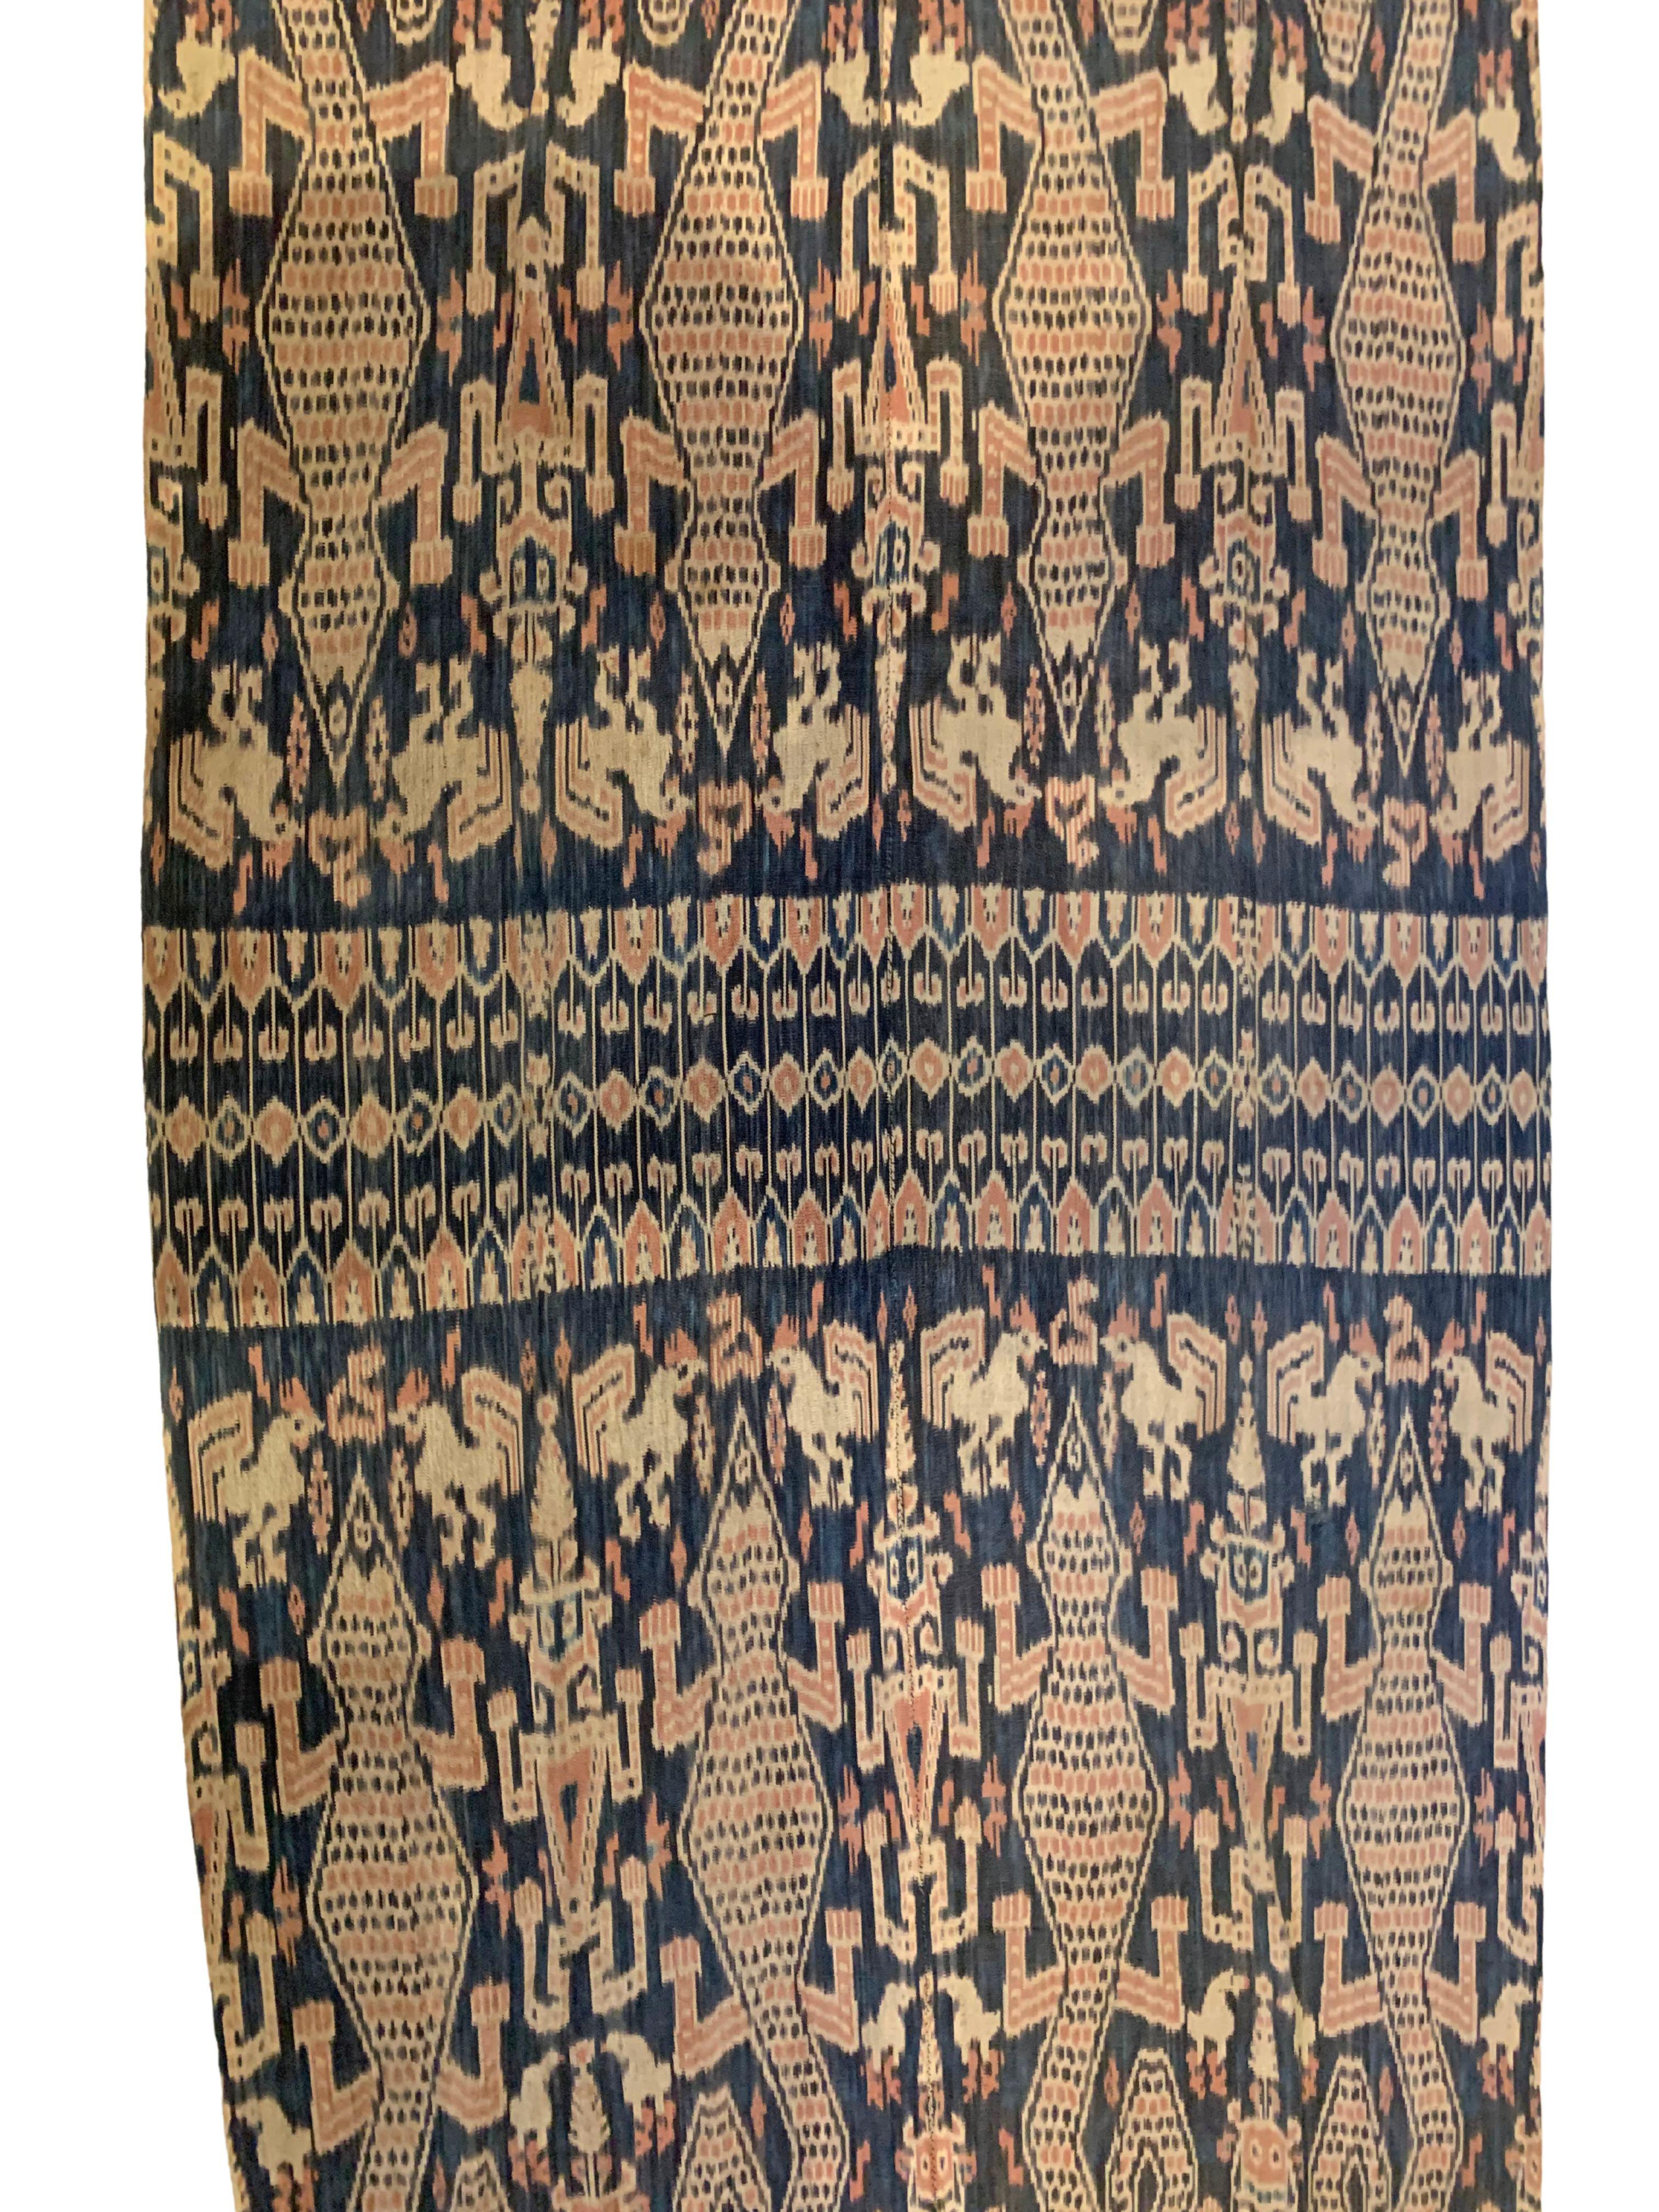 Ce textile Ikat est originaire de l'île de Sumba, en Indonésie. Il est tissé à la main à l'aide de fils teints naturellement, selon une méthode transmise de génération en génération. Il présente un éventail étonnant de motifs tribaux. Les figures de